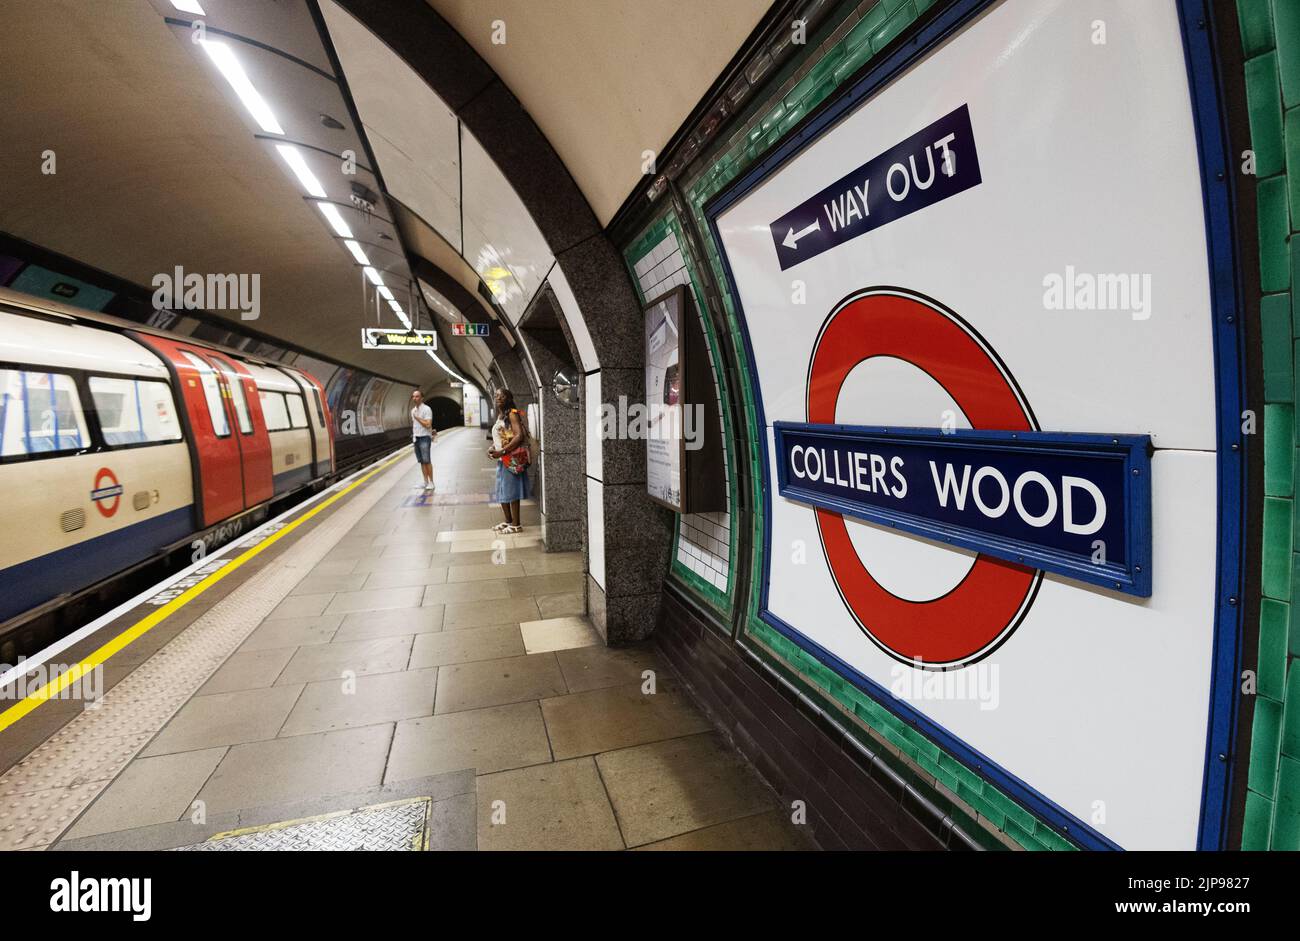 Station de métro de colliers Wood - panneau et plate-forme, colliers Wood, Londres SW19 London UK Banque D'Images